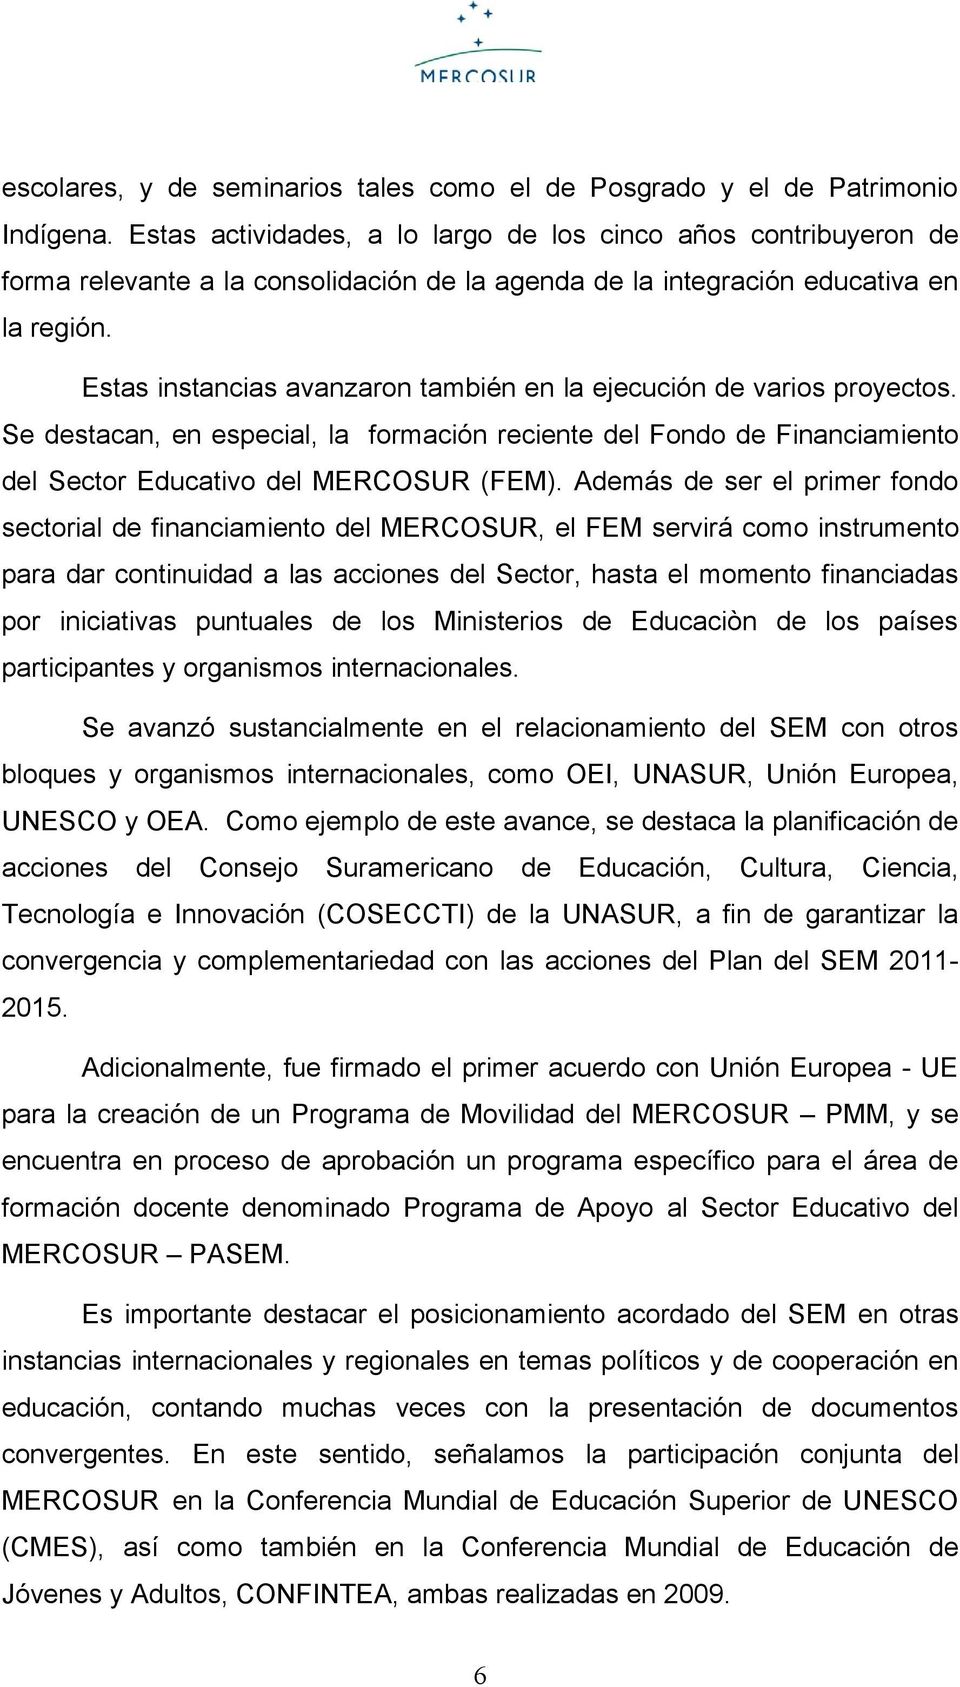 Estas instancias avanzaron también en la ejecución de varios proyectos. Se destacan, en especial, la formación reciente del Fondo de Financiamiento del Sector Educativo del MERCOSUR (FEM).